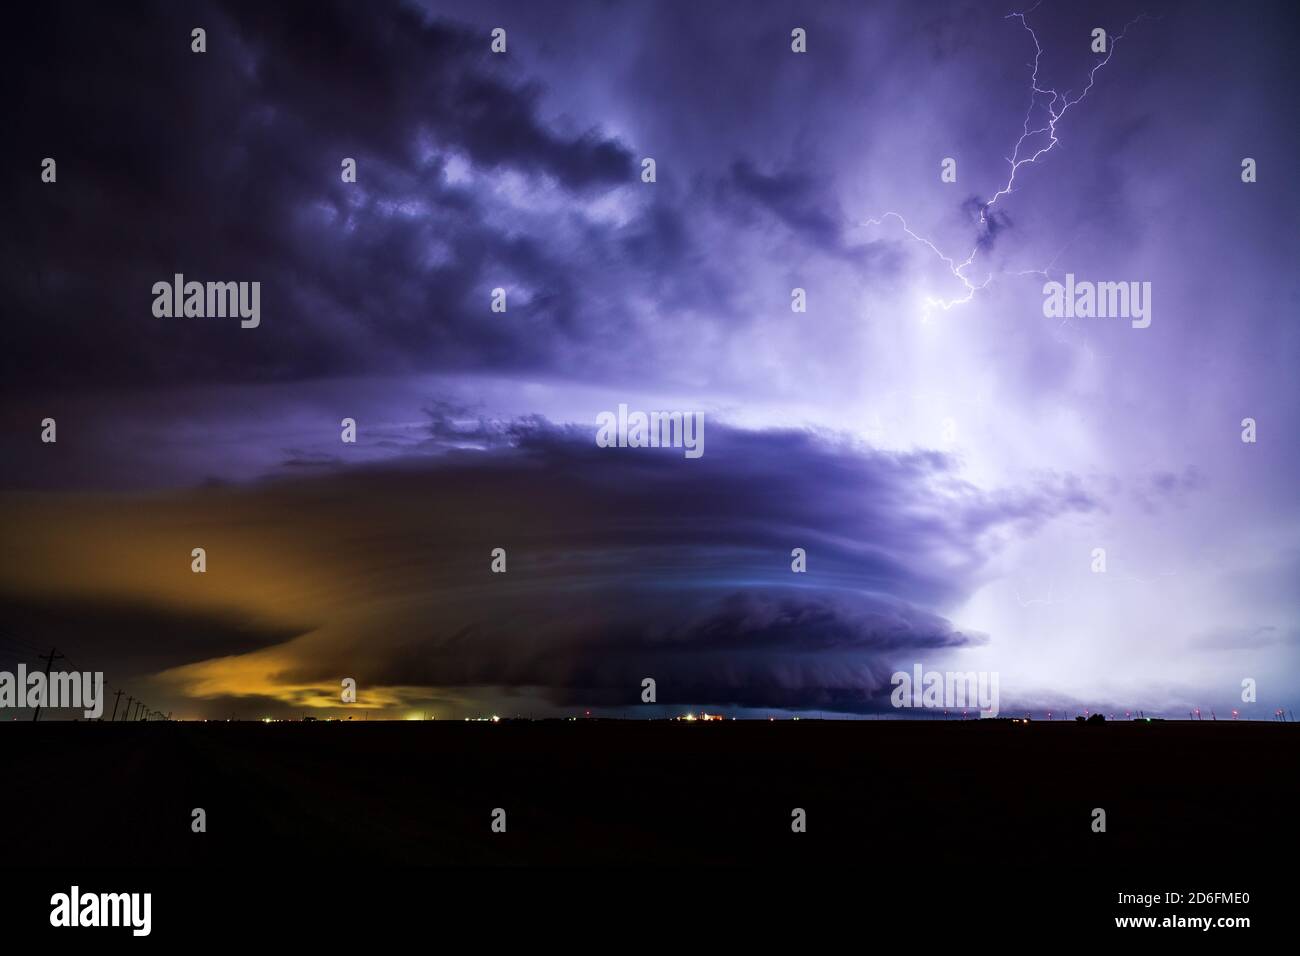 Lightning illumina una tempesta di superscelle con spettacolari nuvole di tempeste durante un evento meteorologico grave su Dodge City, Kansas Foto Stock